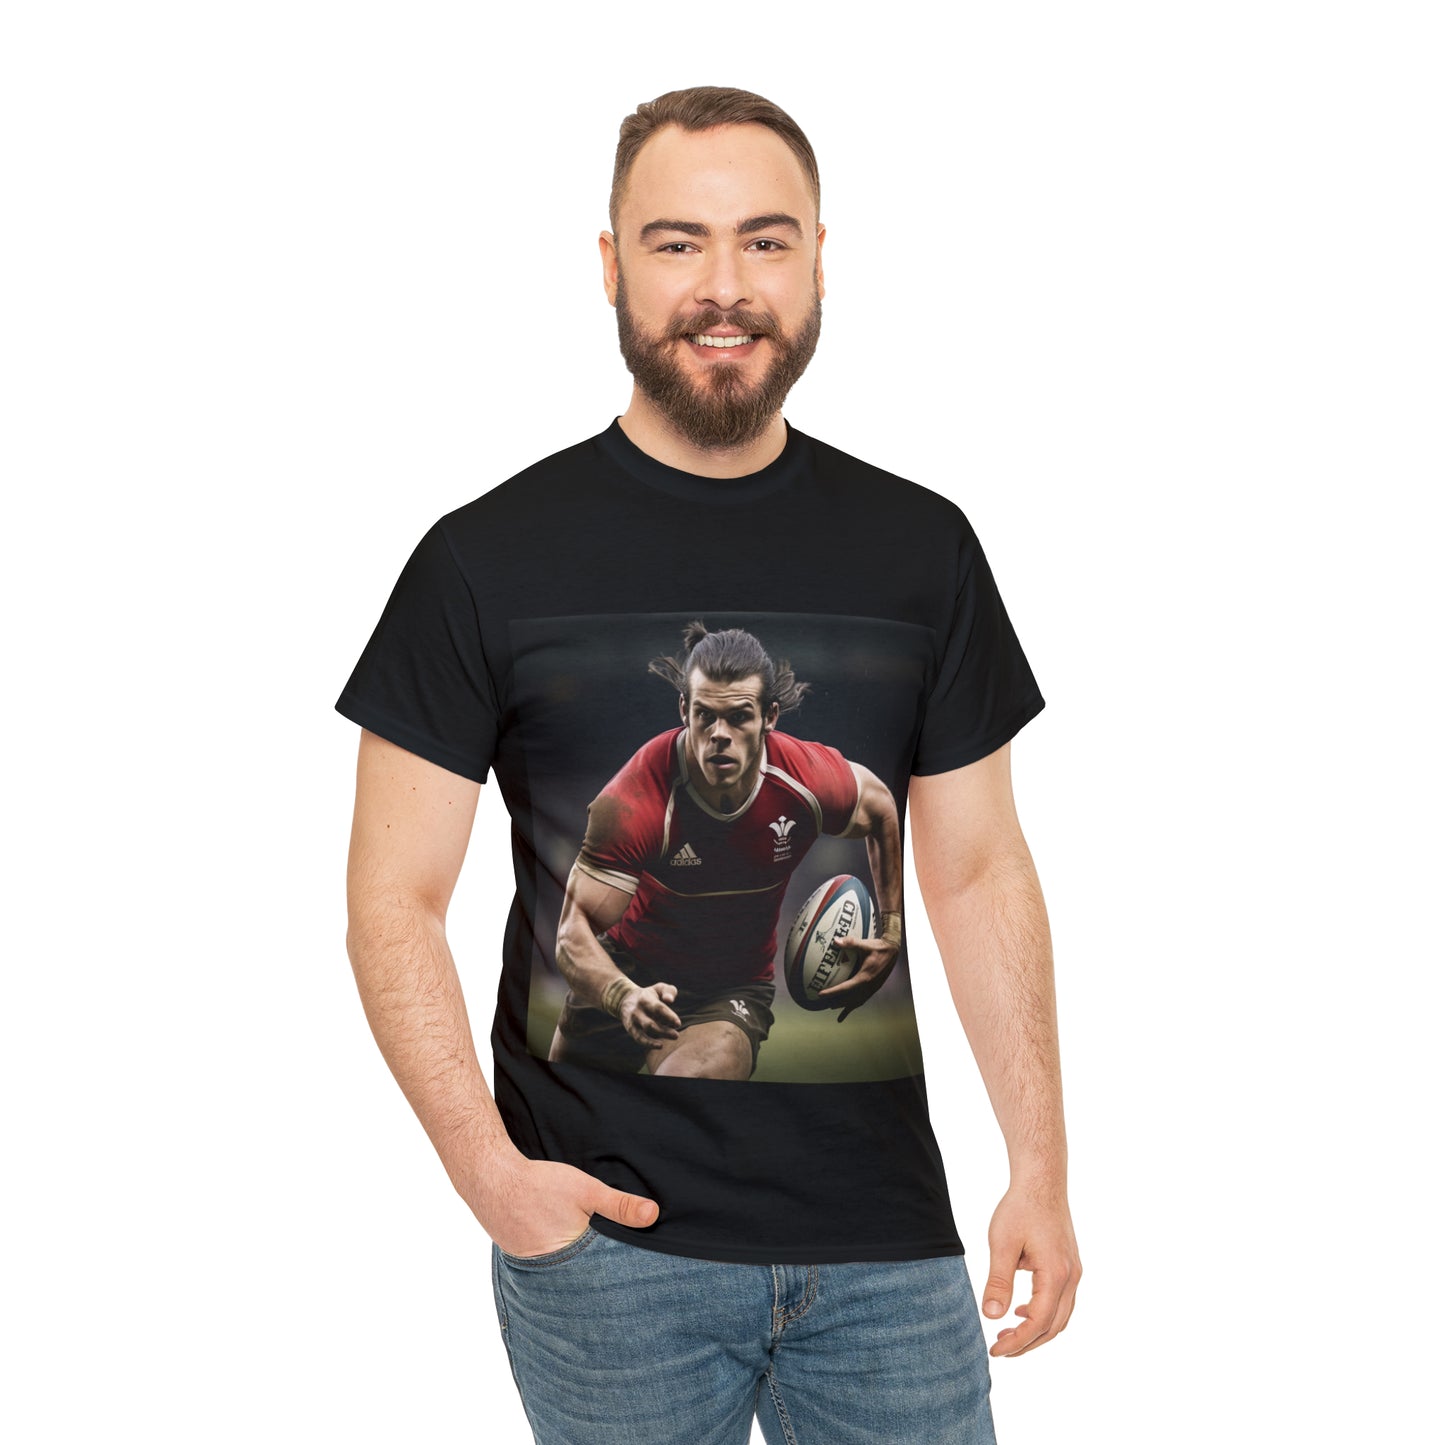 Ready Bale - dark shirts